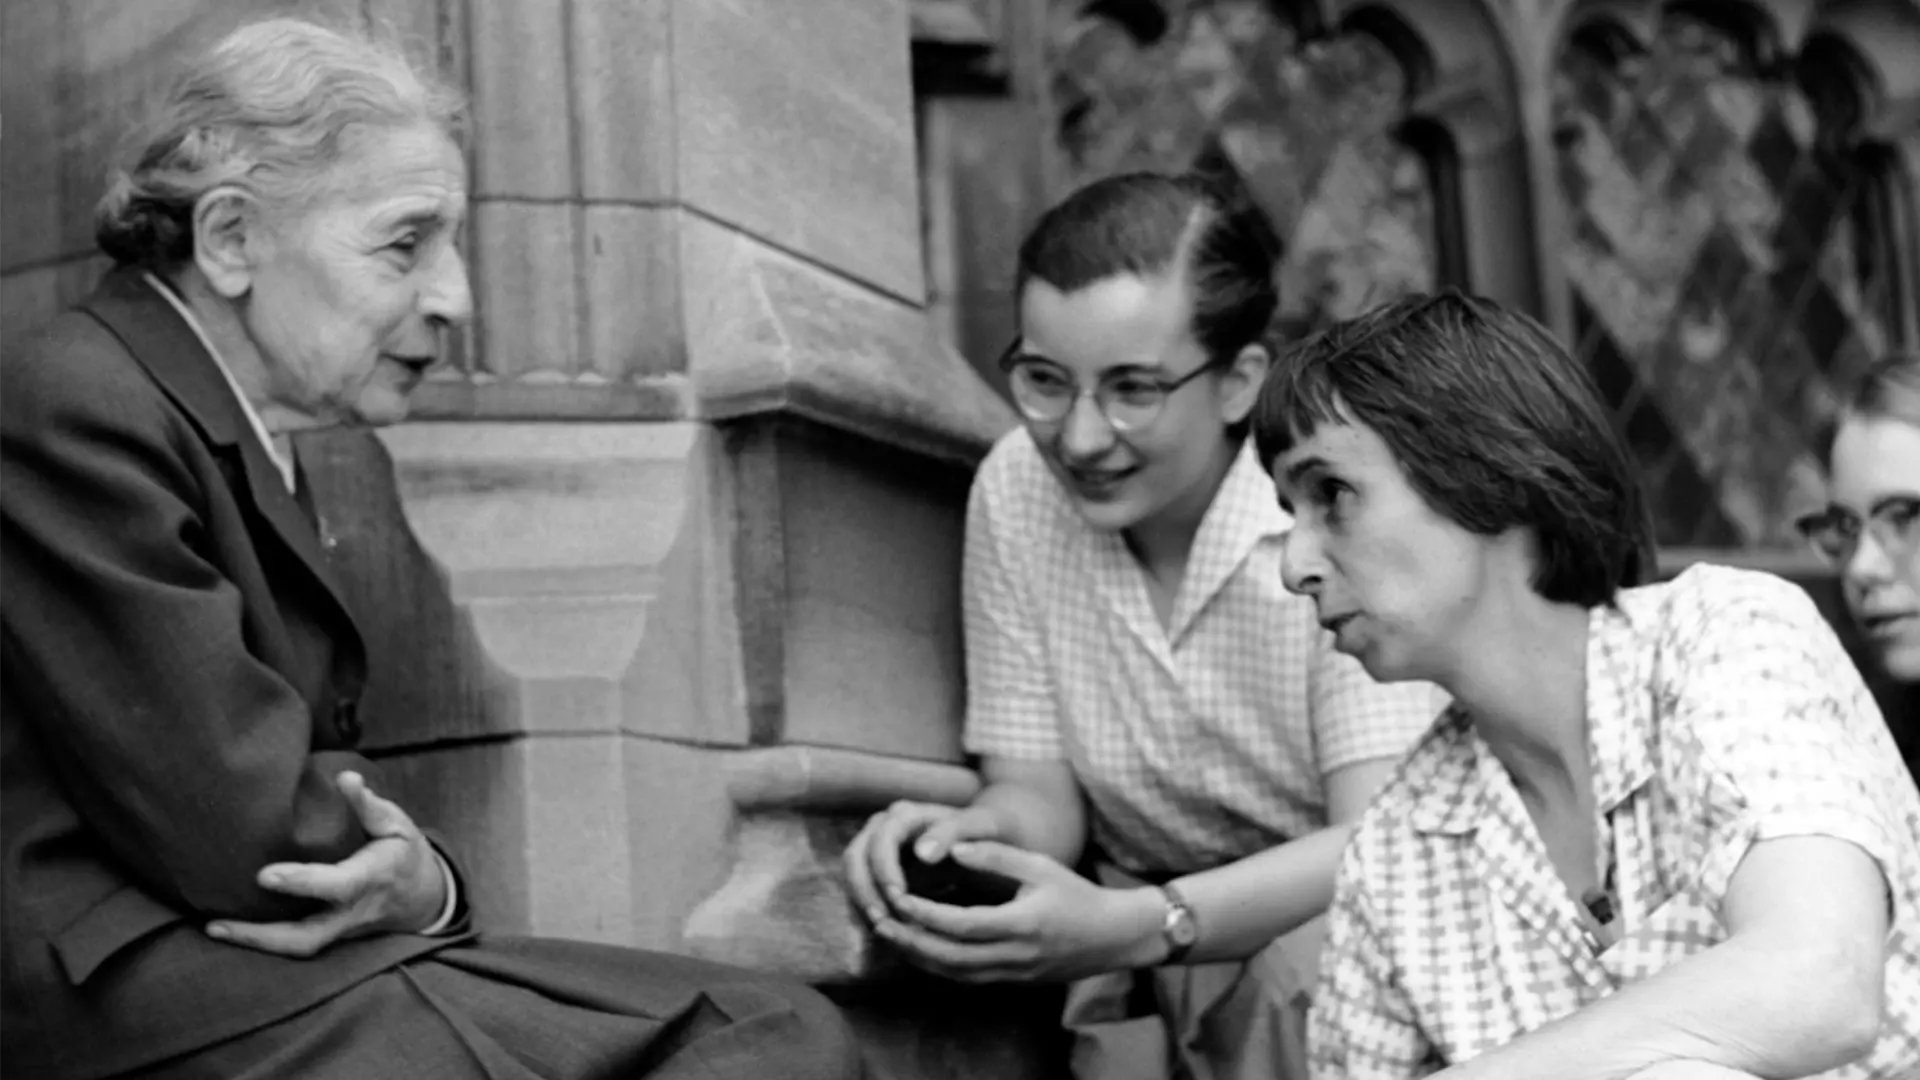 Lise Meitner med studenter https://commons.wikimedia.org/wiki/File:Chemist_Lise_Meitner_with_students.jpg